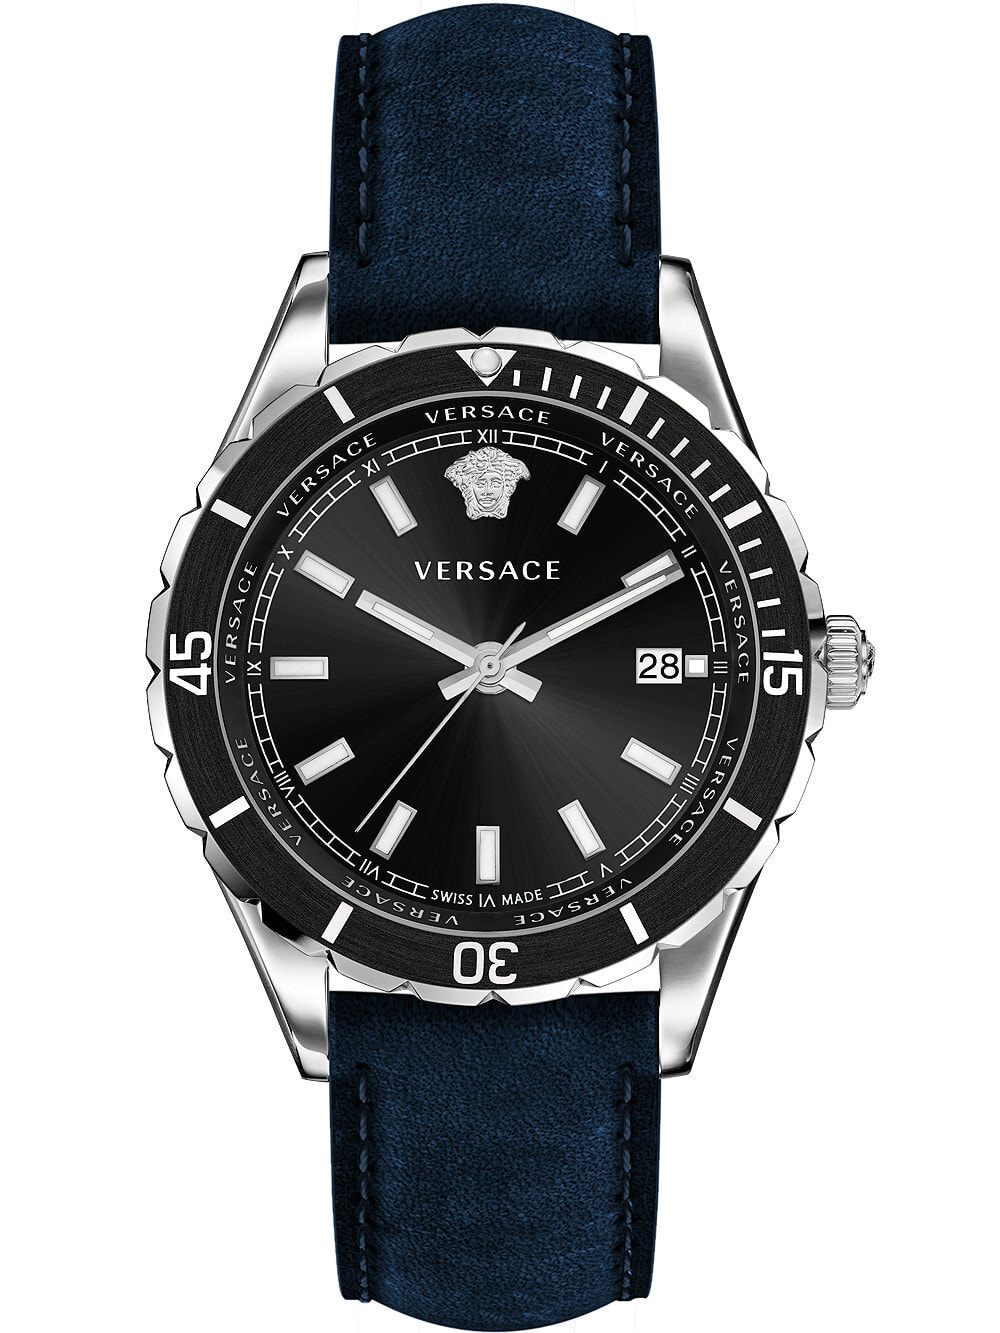 Мужские наручные часы с синим кожаным ремешком  Versace VE3A00220 Hellenyium mens 42mm 5ATM